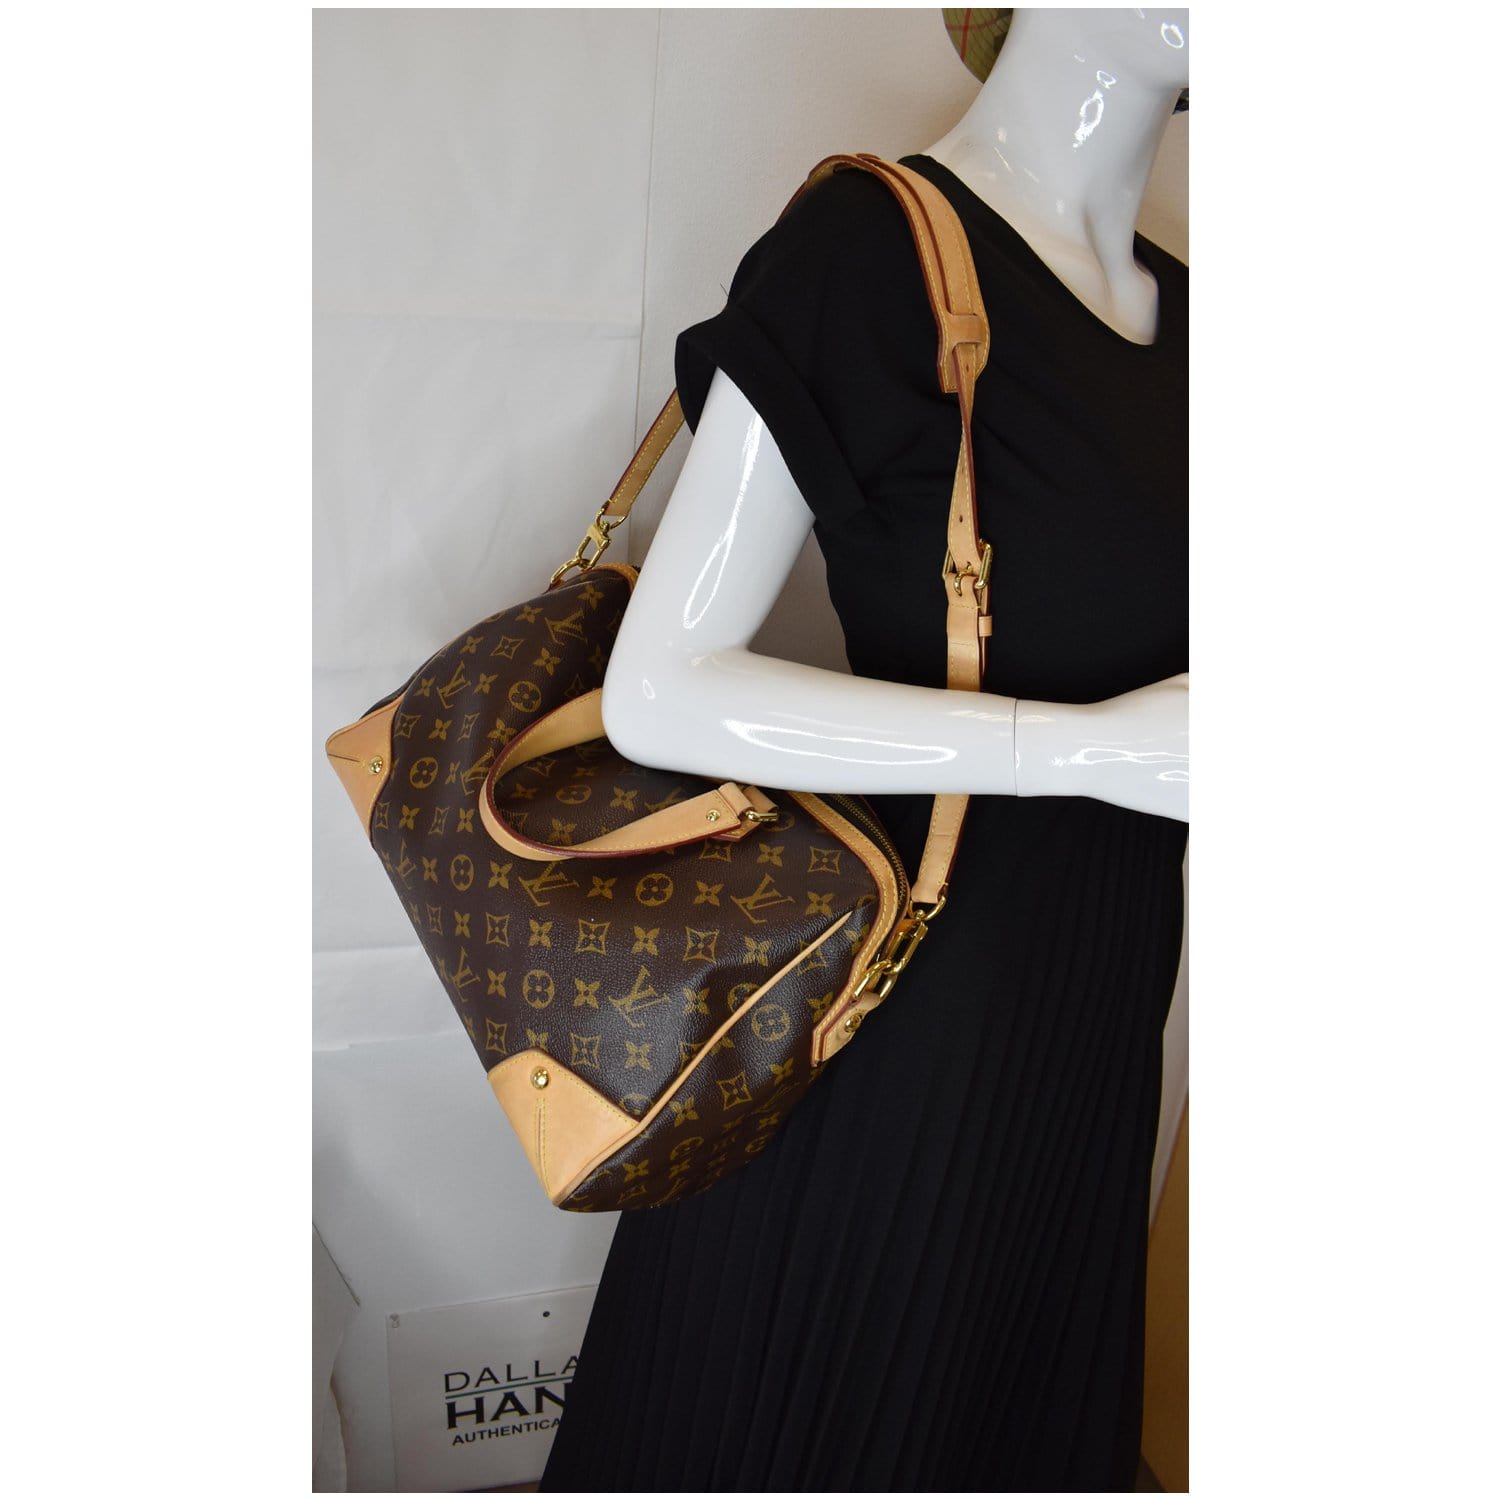 Authentic Louis Vuitton Classic Monogram Retiro PM Handbag